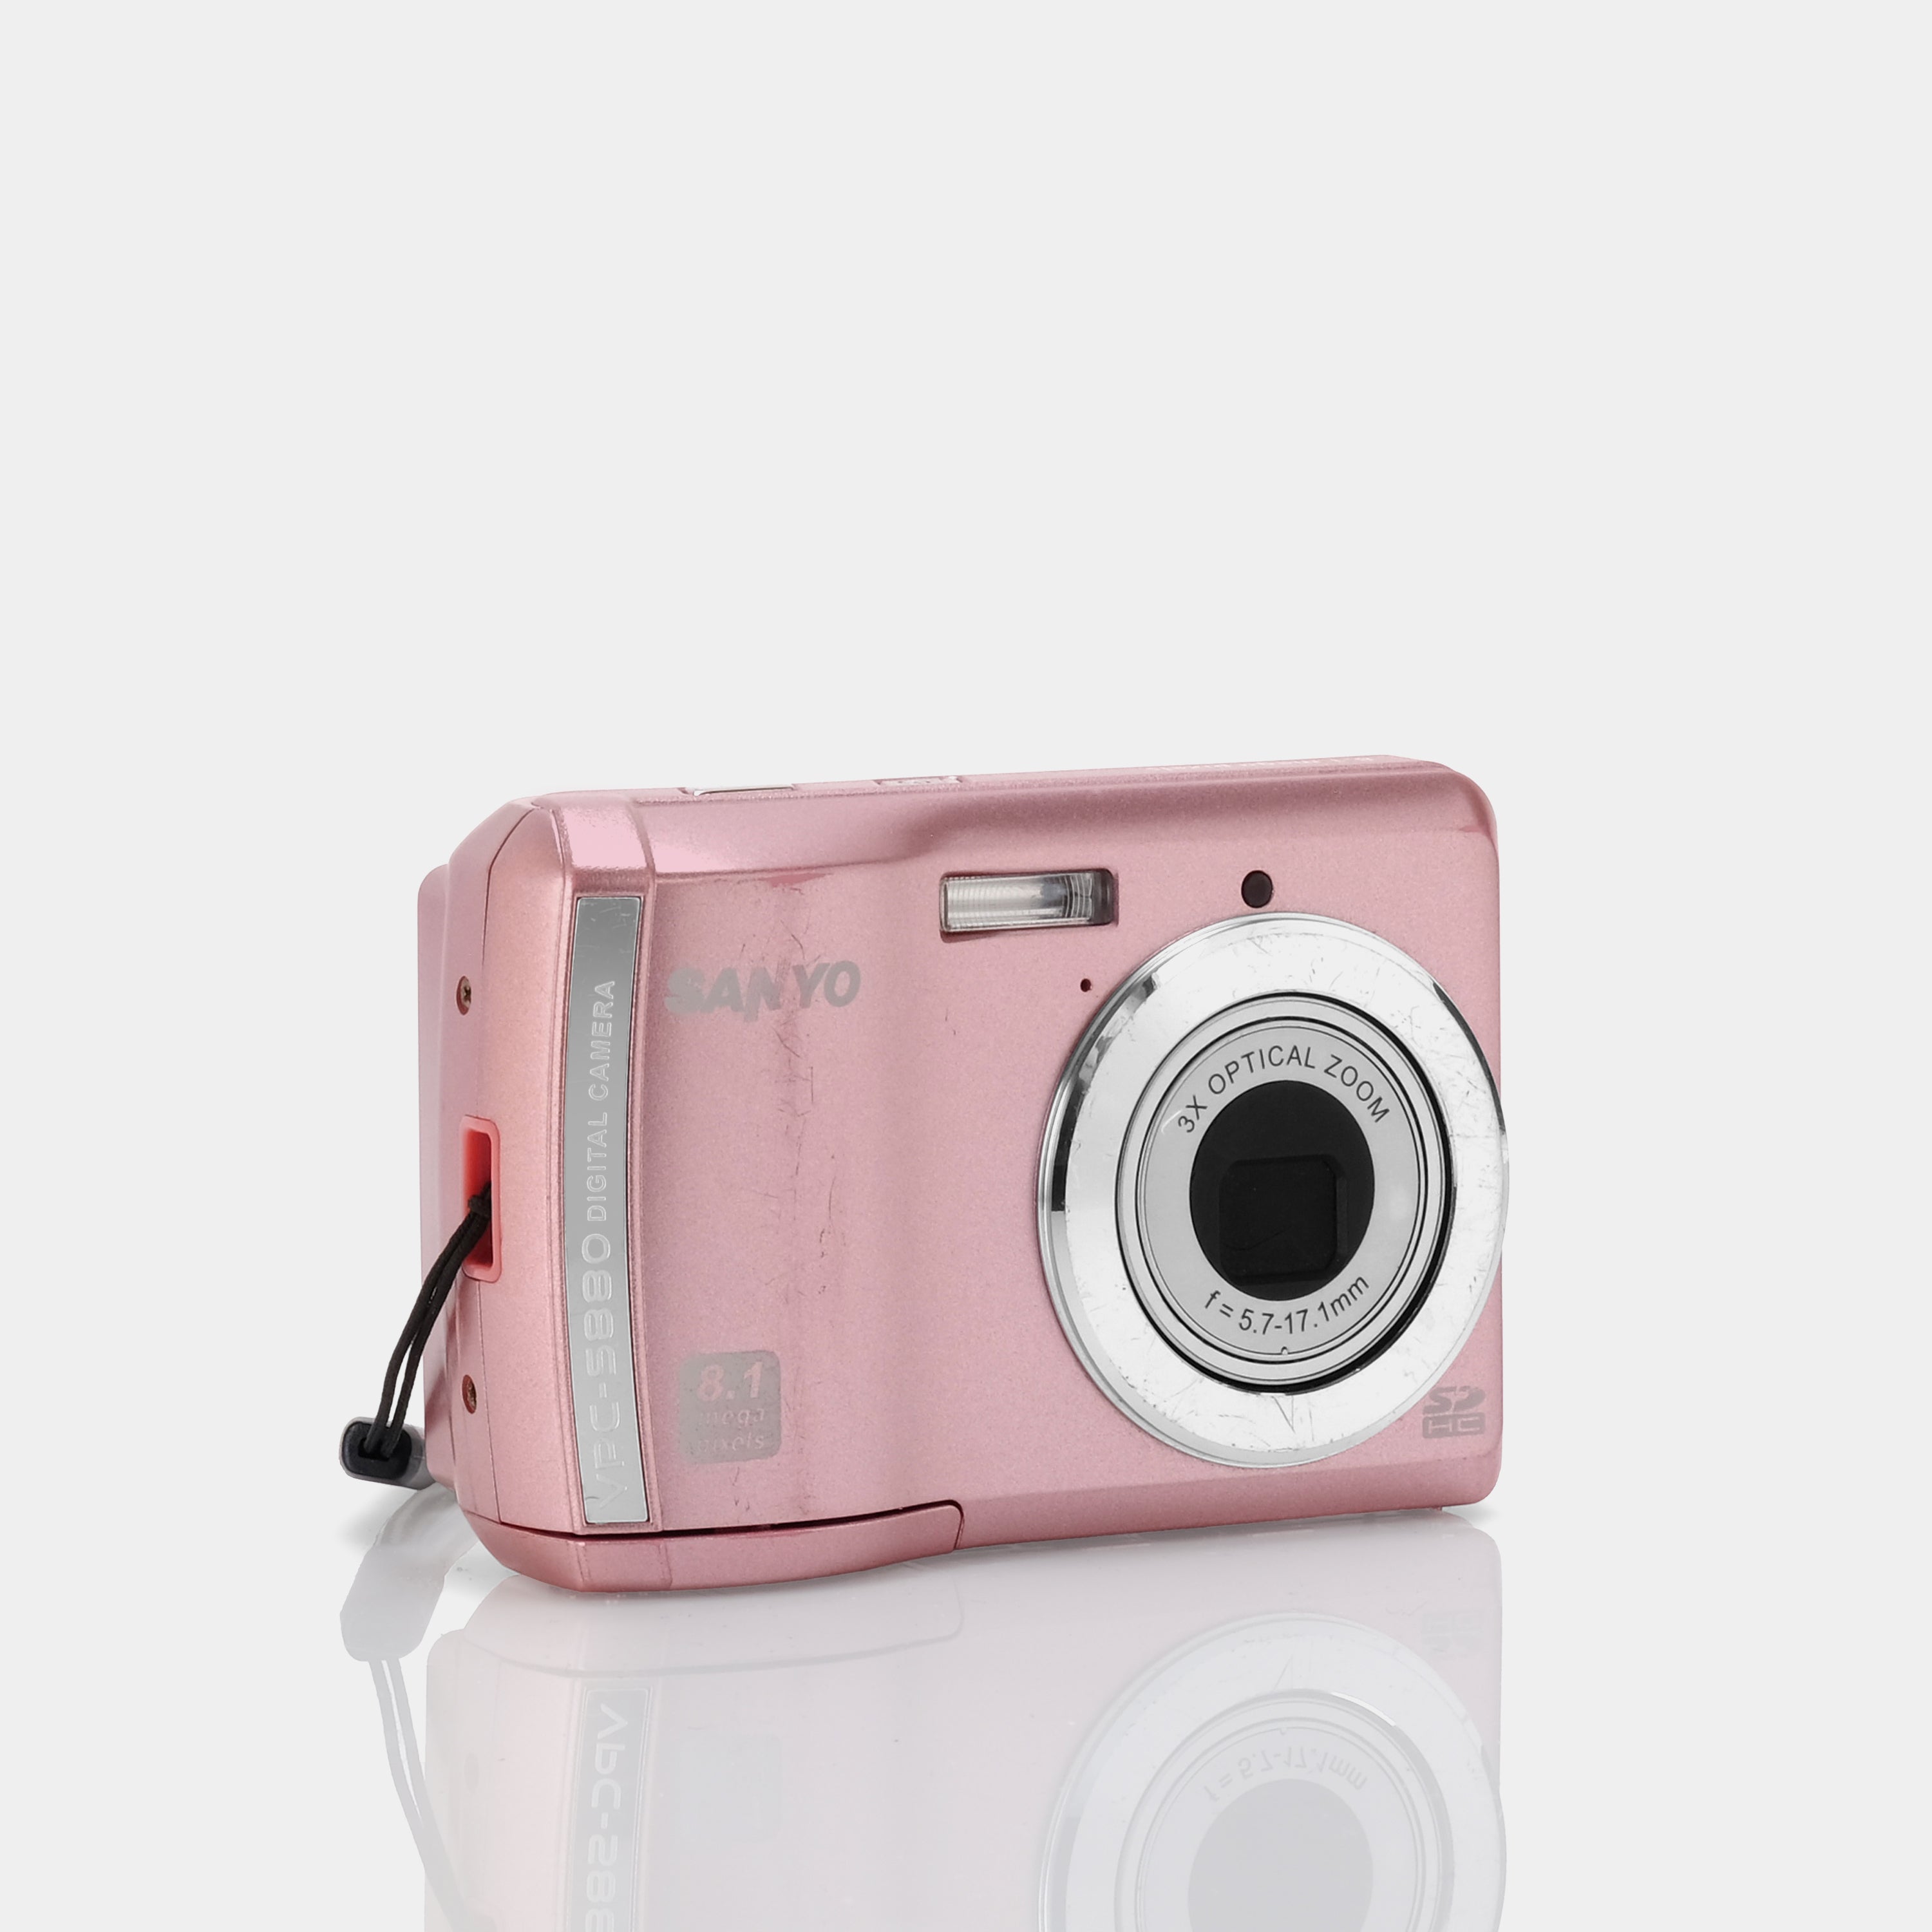 Sanyo VPC-S880 Pink Point and Shoot Digital Camera